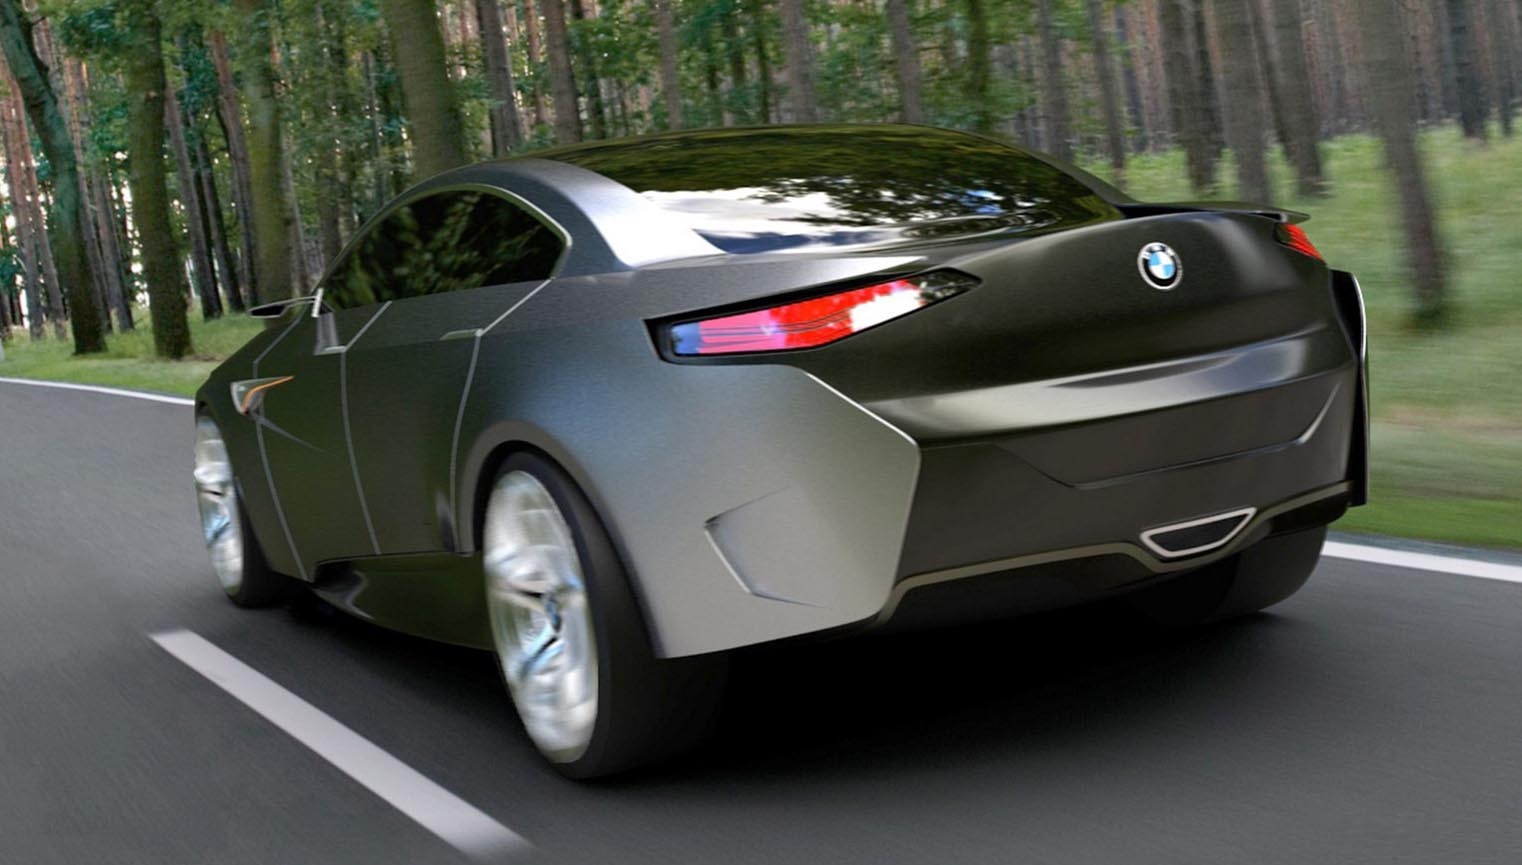 BMW i-FD reuseste sa modernizeze in mod laudabil imaginea de marca BMW